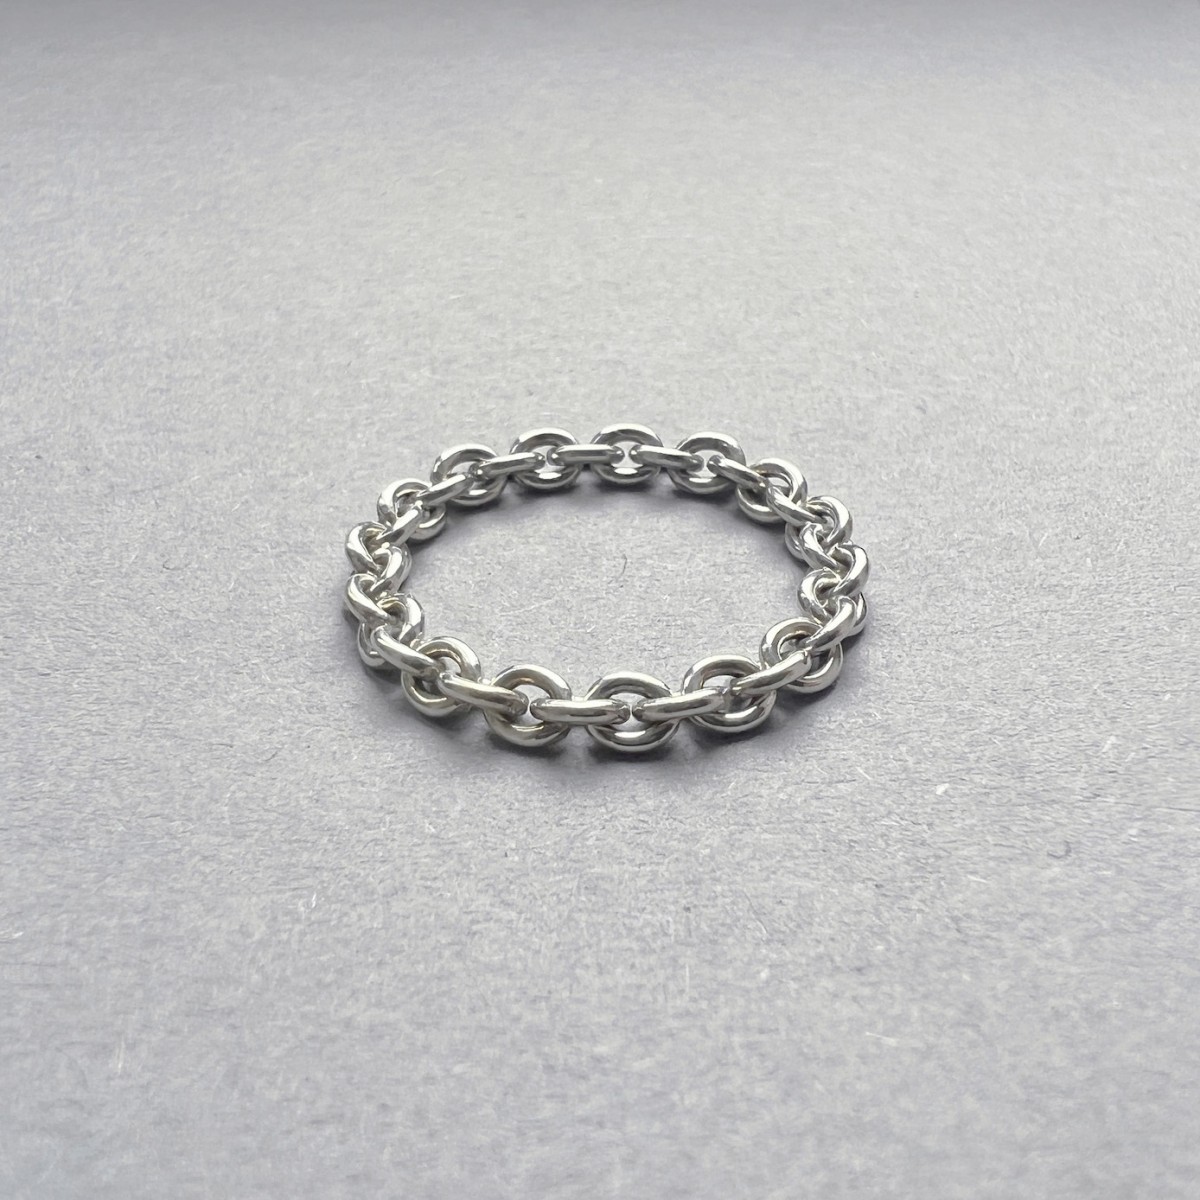 Teresa Gruber 
Ring "Anker" 
925 Silber